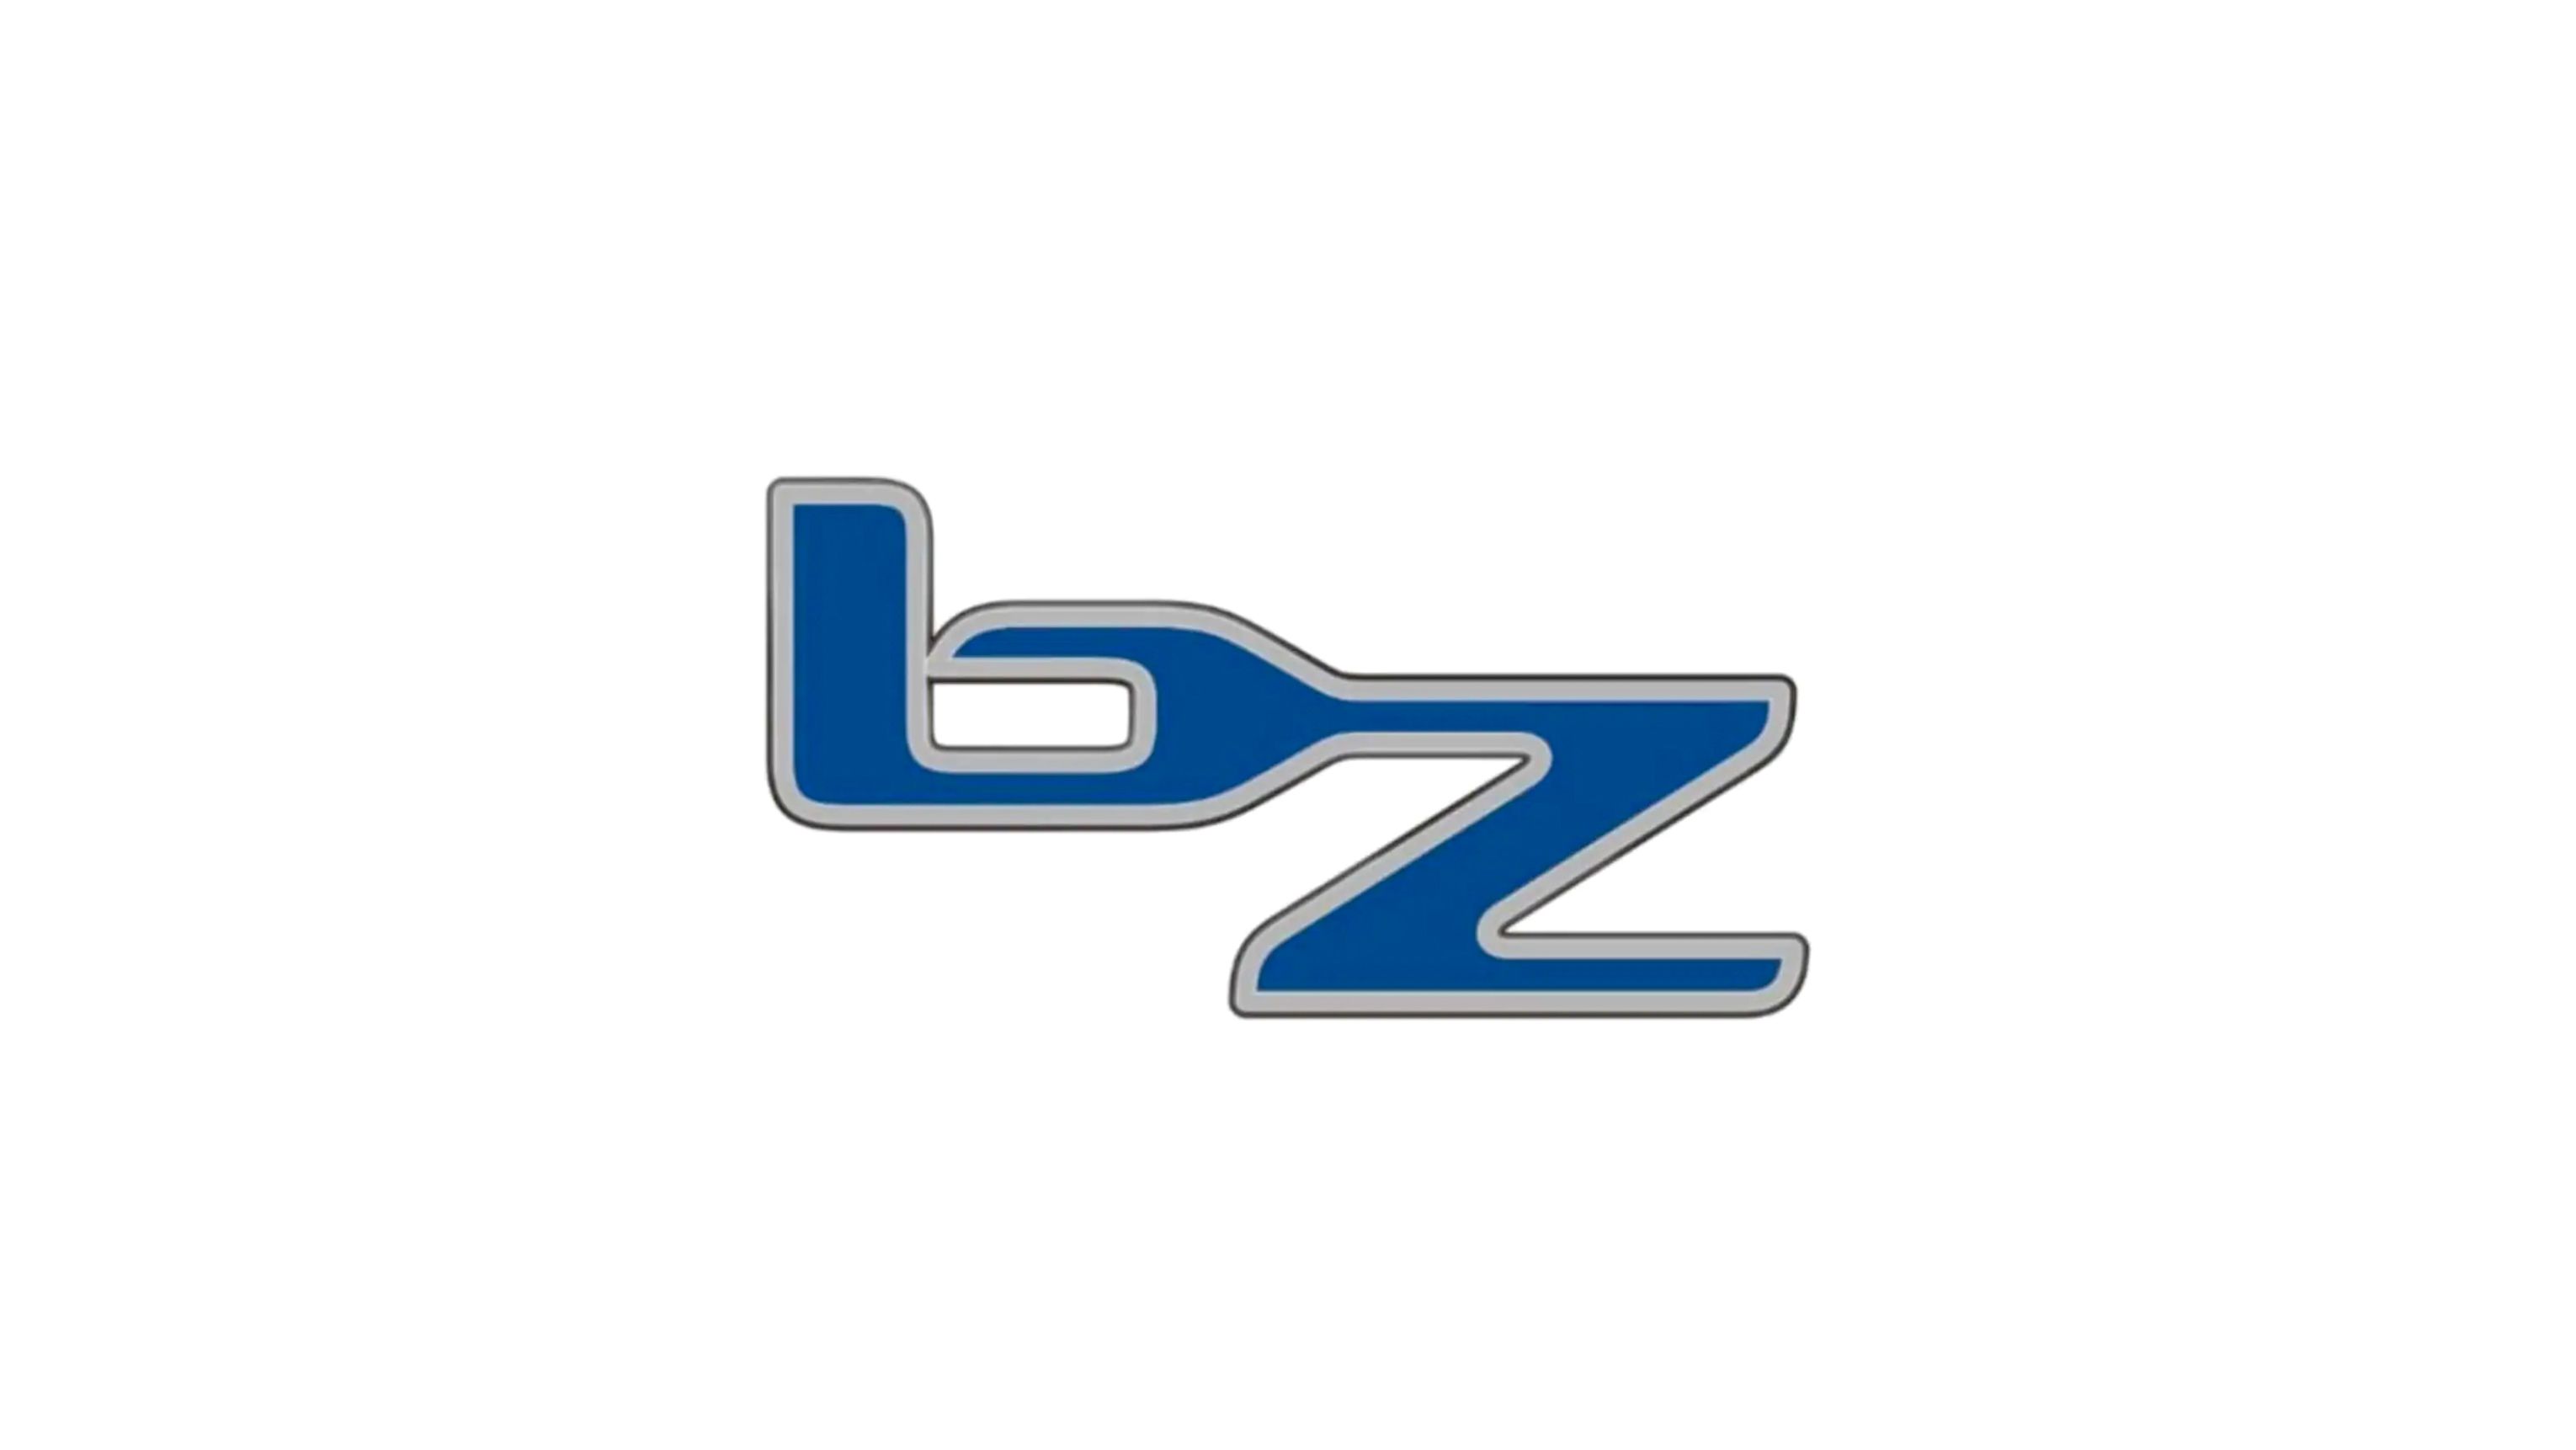 File:BZ logo.svg - Wikipedia